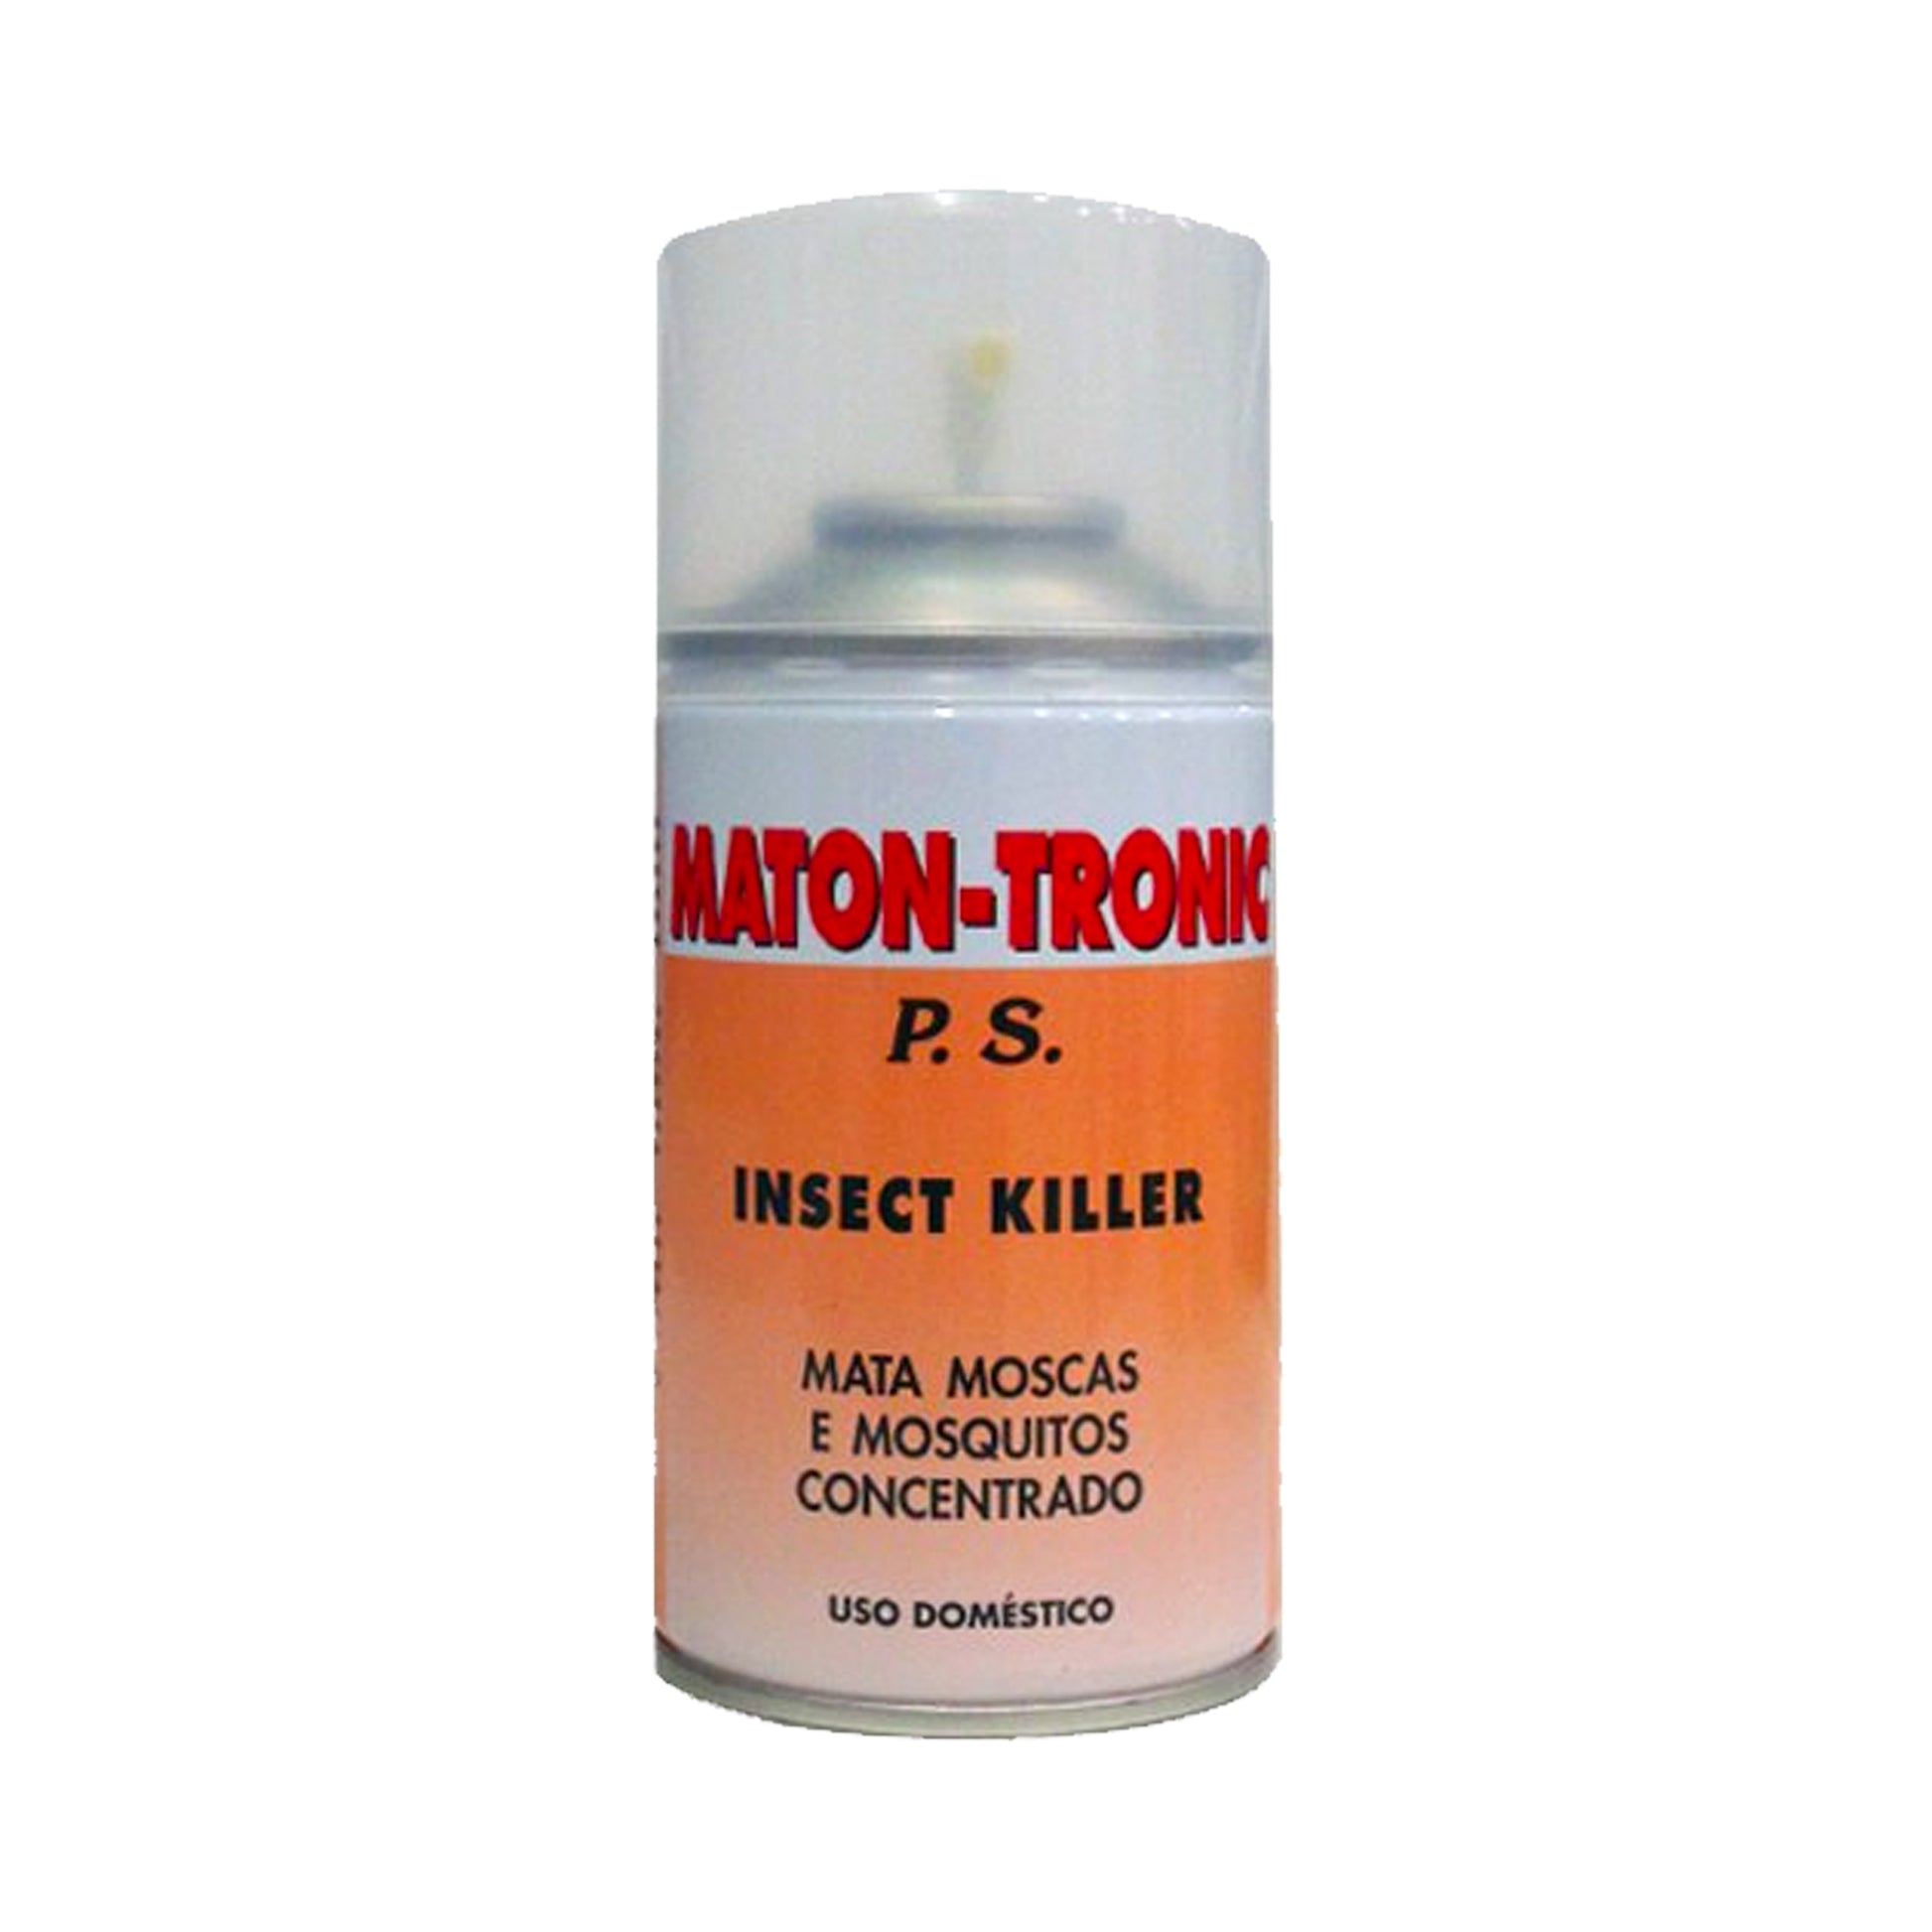 INSECTICIDATRONIC-MATON, é um inseticida super concentrado para a eliminação de moscas e mosquitos. Contém extrato de piretro, um ingrediente ativo de origem natural. 